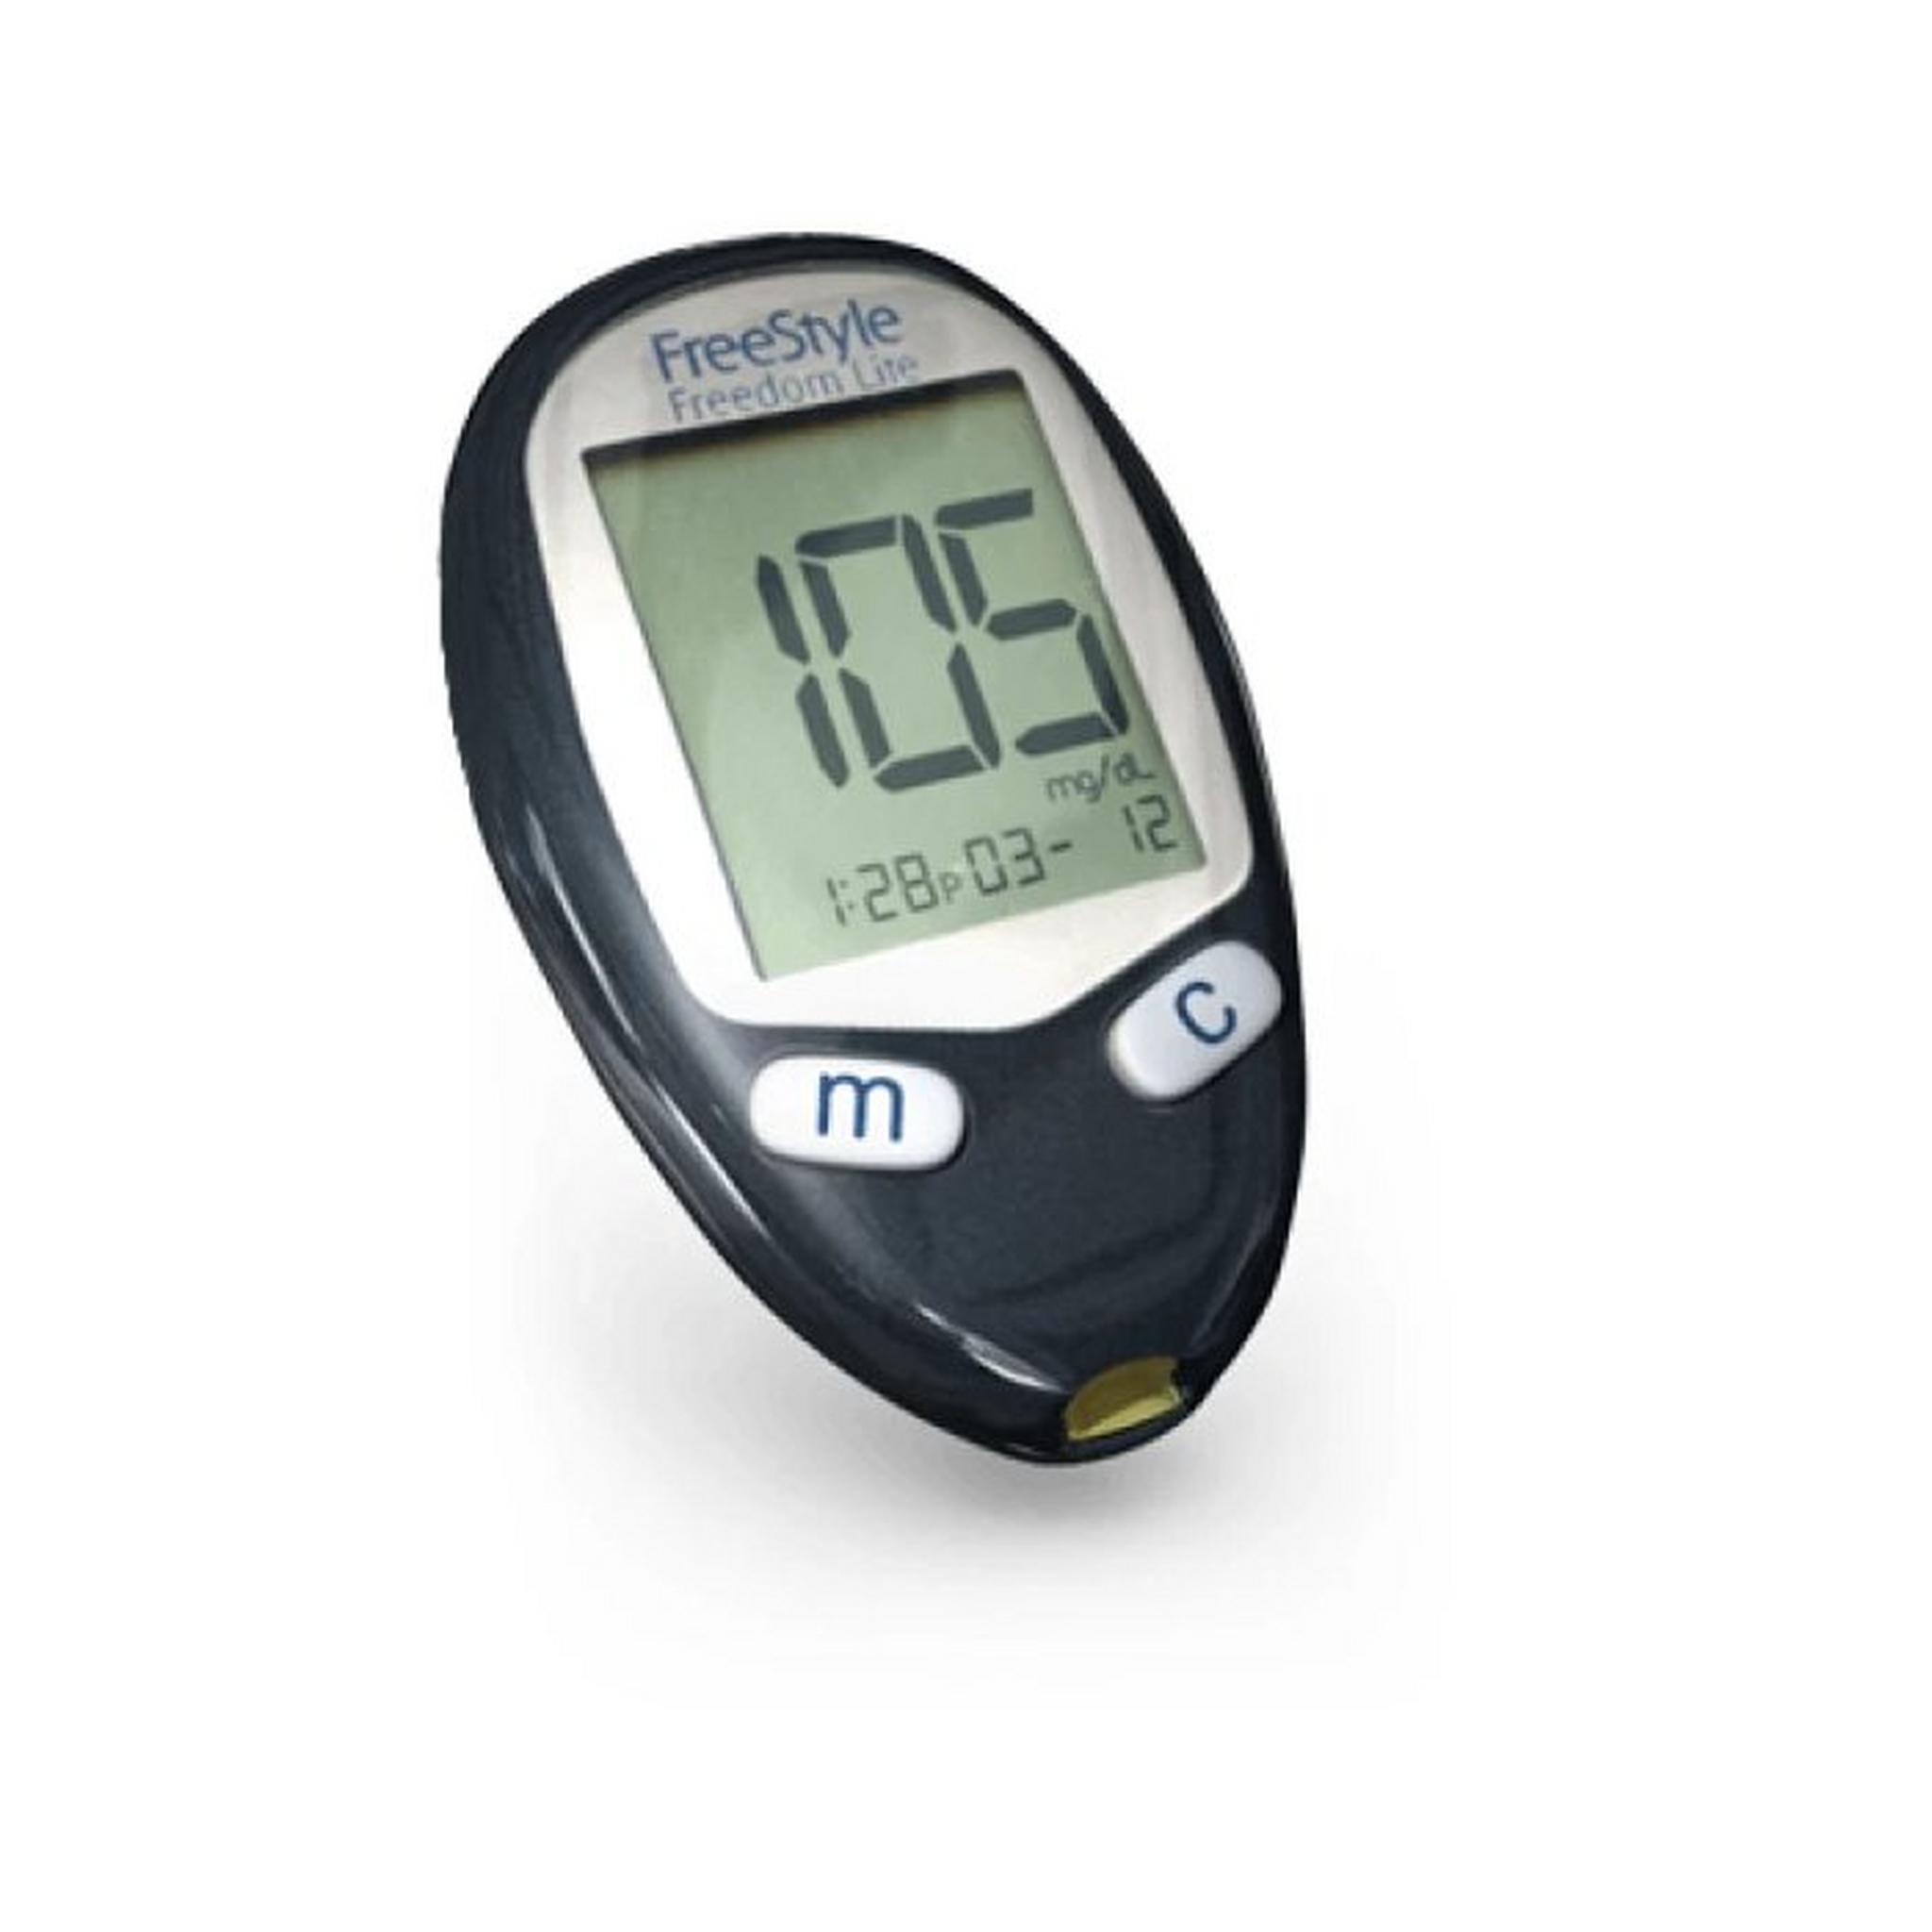 مجموعة جهاز قياس ضغط الدم على المعصم ار اس2 + جهاز استنشاق البخار يو100 مايكرو اير+ جهاز قياس السكر فري ستايل من اومرون ، NEU100E + HEM6161E + 7108770